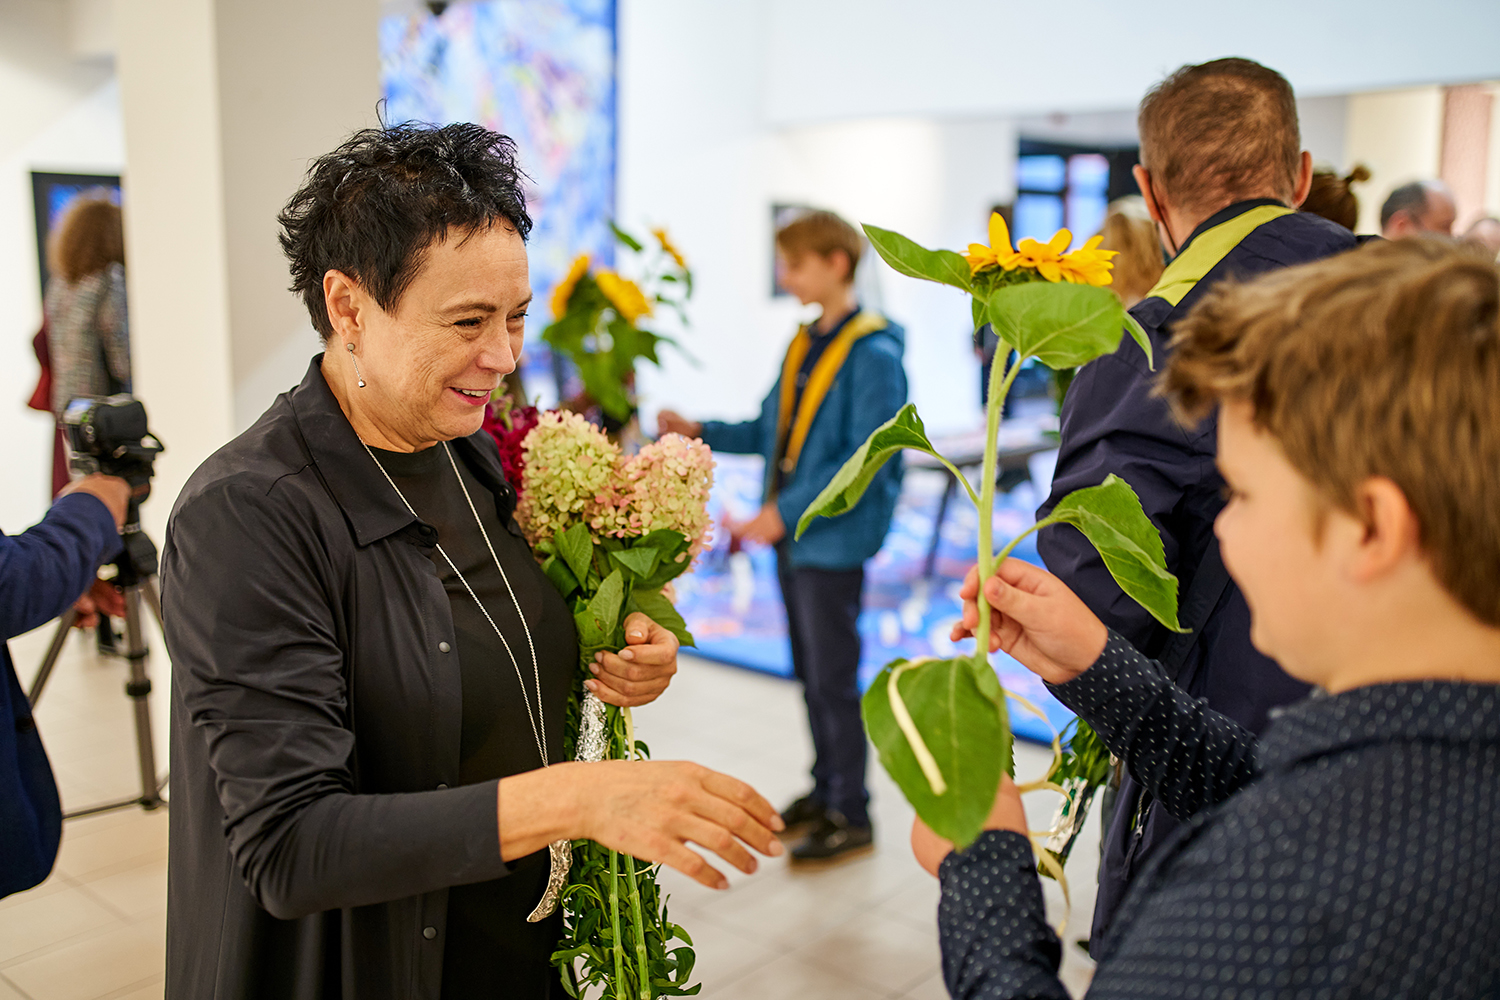 Na pierwszym planie prof. Jolanta Rudzka-Habisiak. Stoi w centrum kadru z naręczem kwiatów, na tle prac i zwiedzających. Rozpromieniona serdecznym  uśmiechem, przyjmuje  duży kwiat słonecznika od młodego chłopca, który odwzajemnia życzliwe gesty.